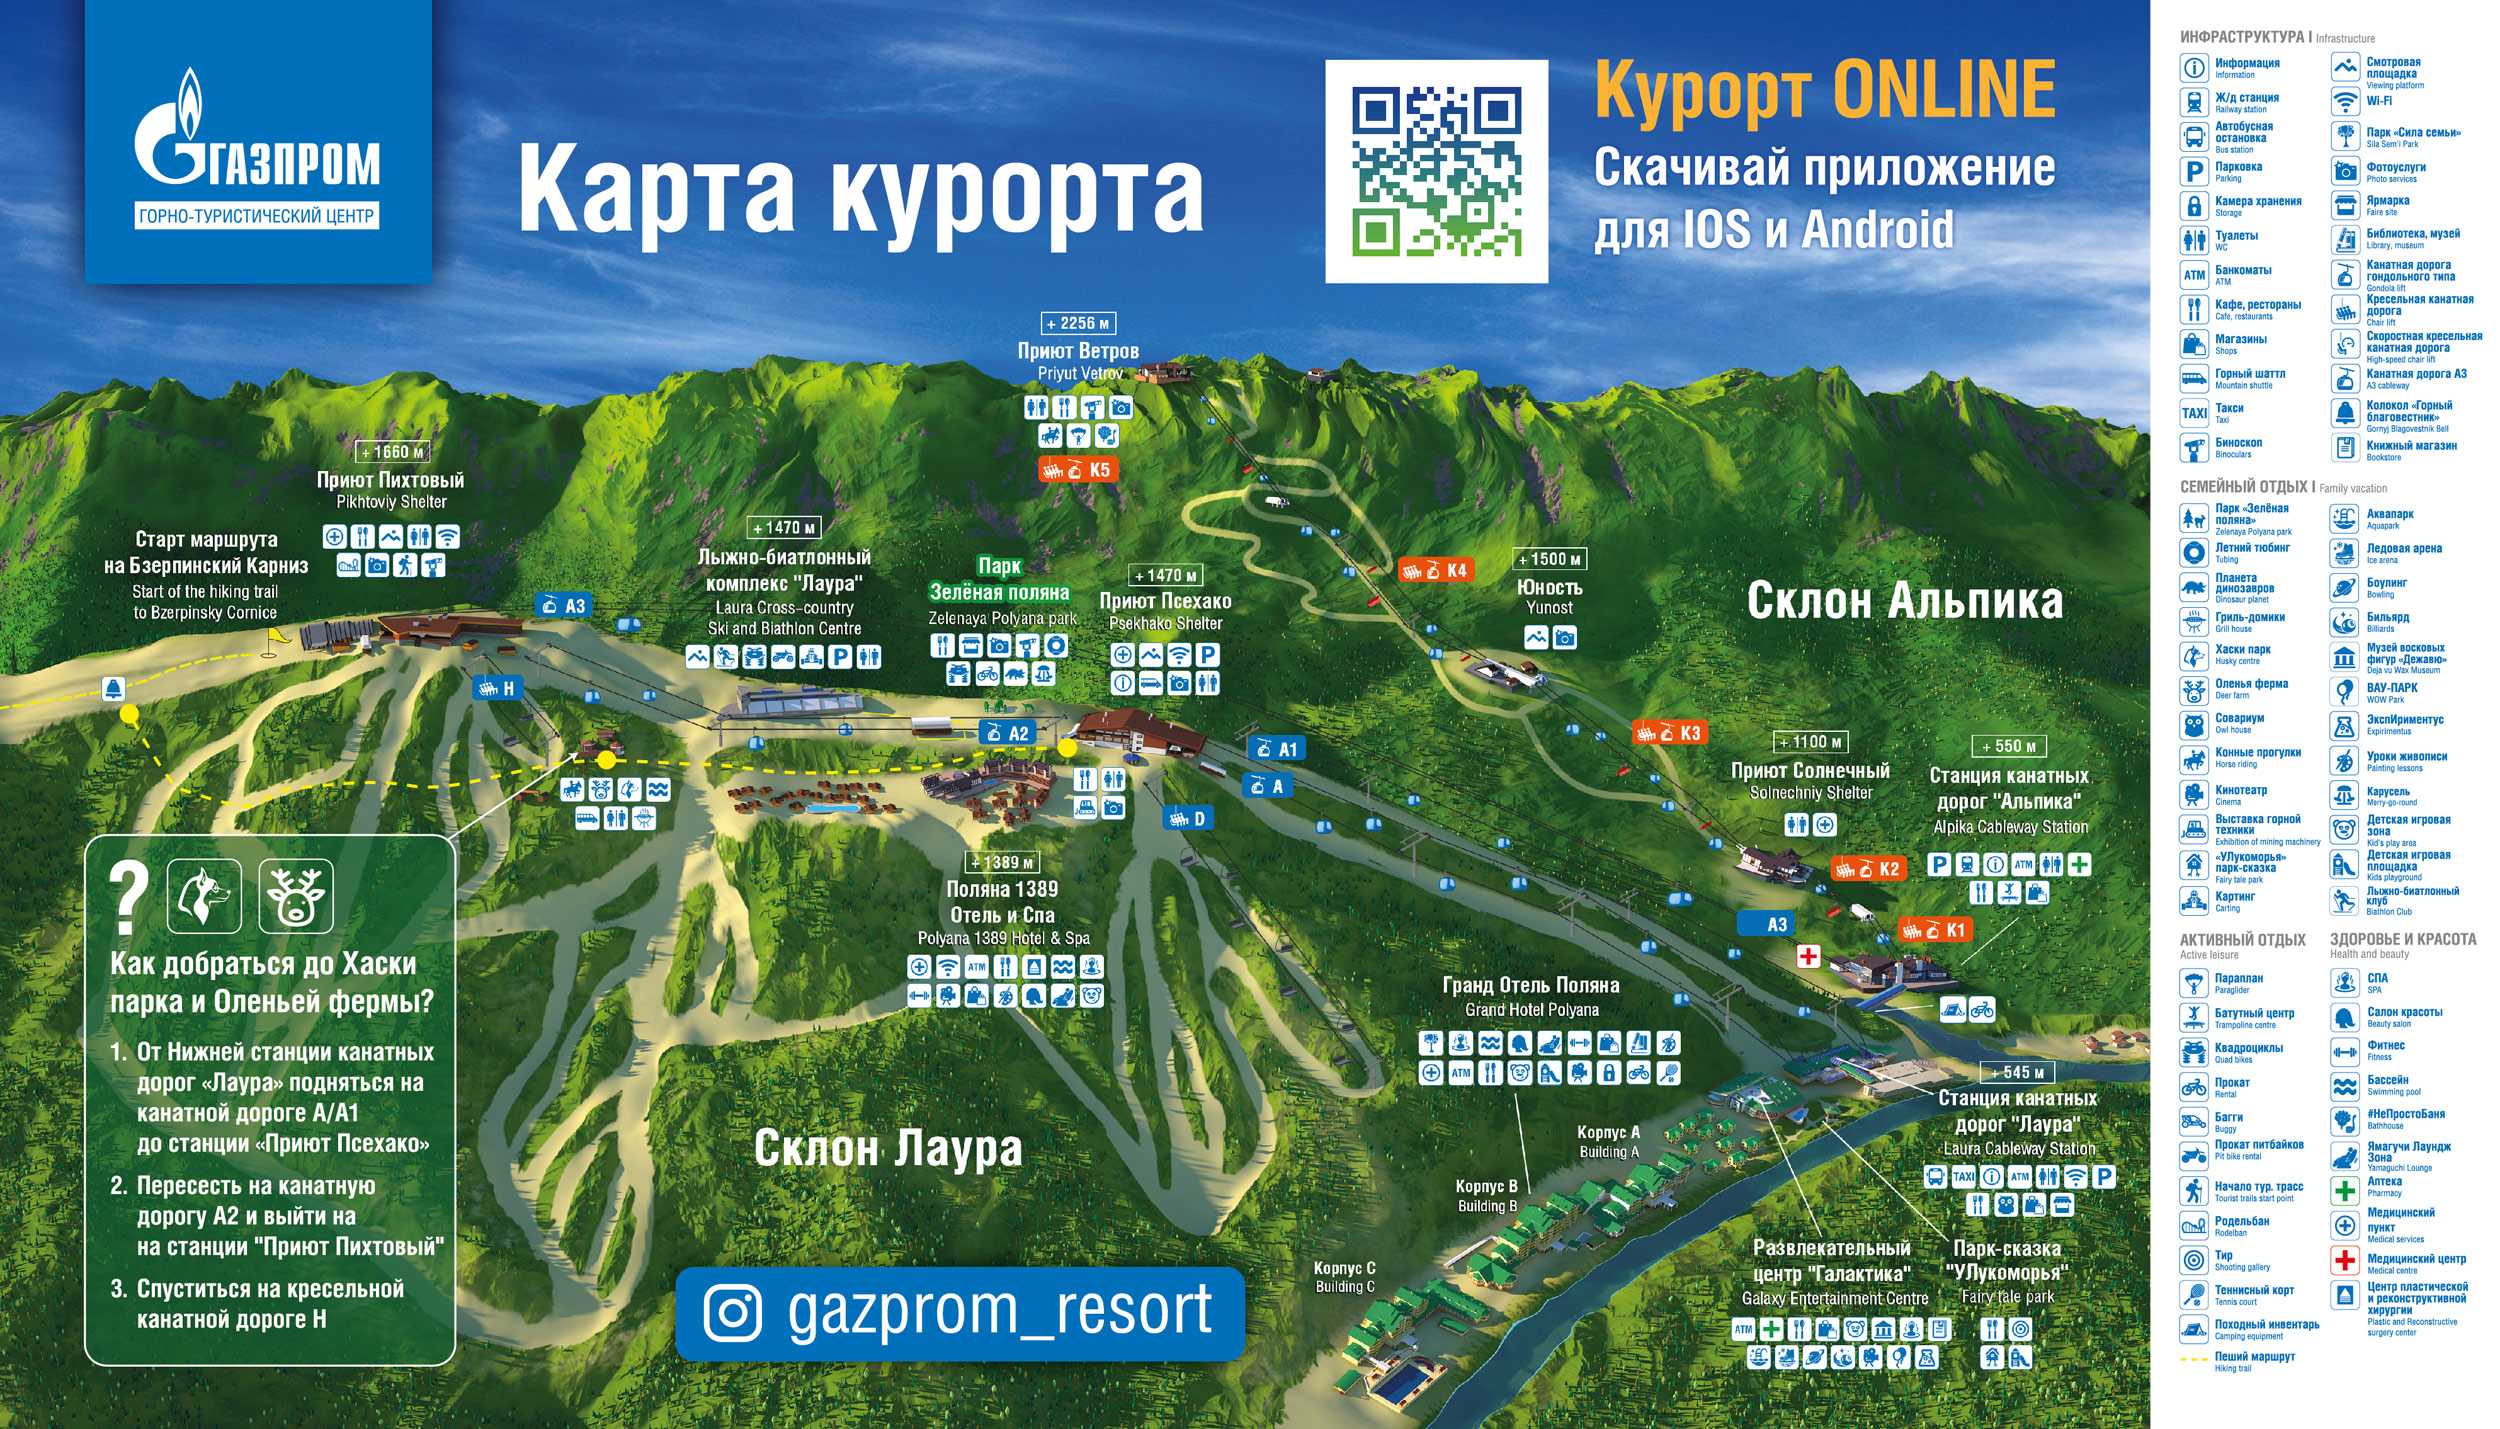 Газпром гтц / gazprom mountain resort - горнолыжные курорты и склоны россии